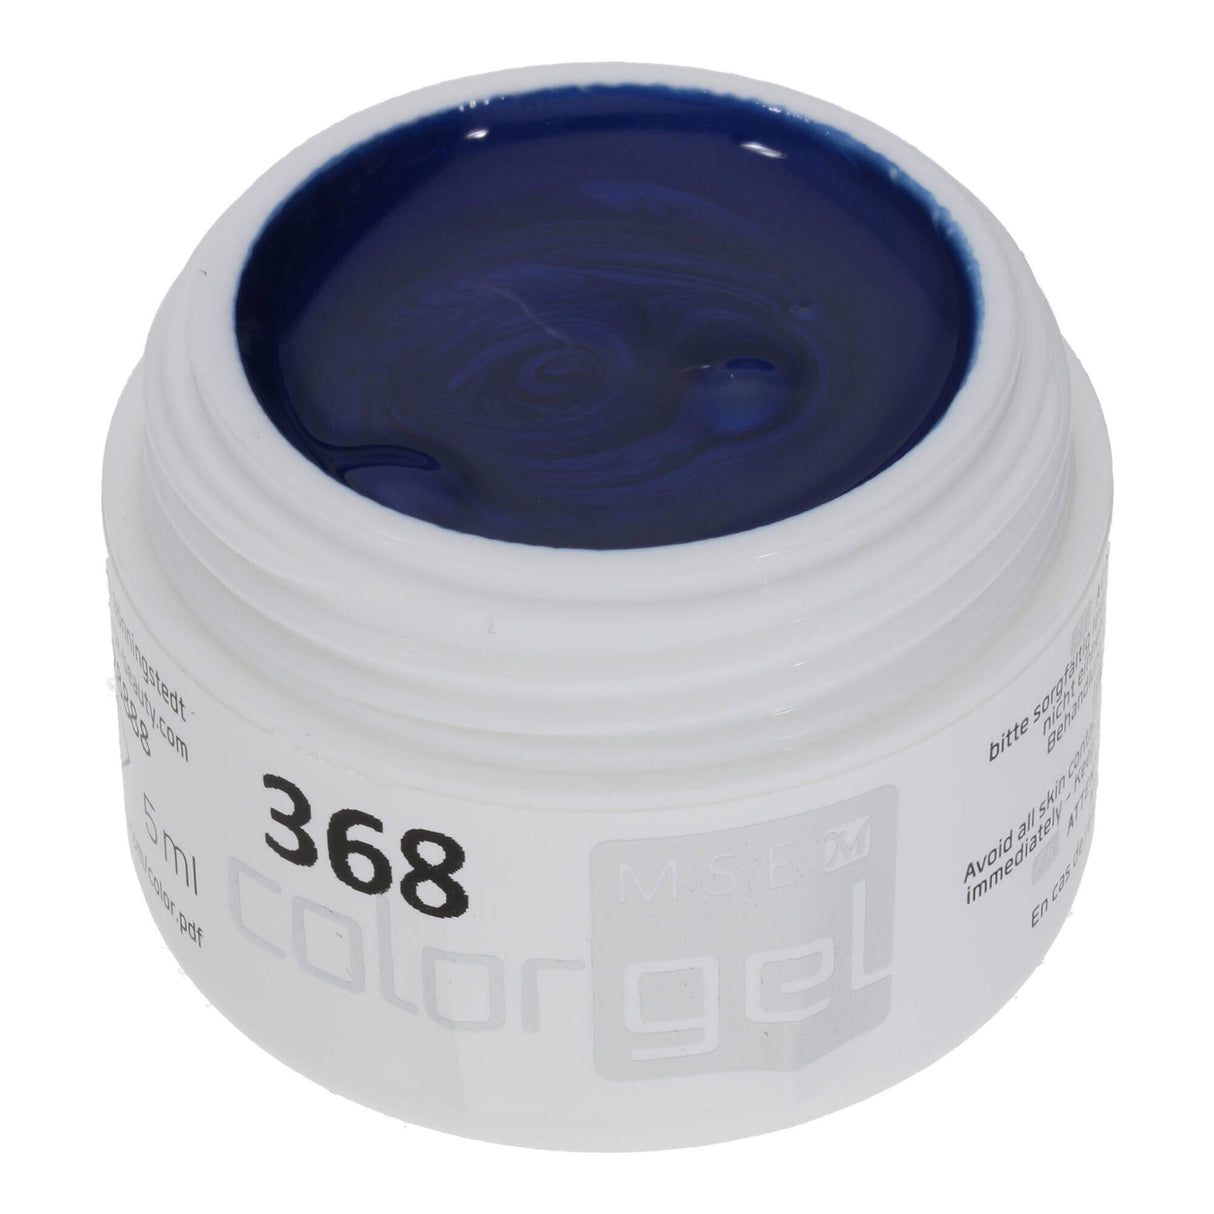 # 368 Premium EFFECT Color Gel 5ml Màu xanh lam đậm với ánh sáng lung linh huyền ảo